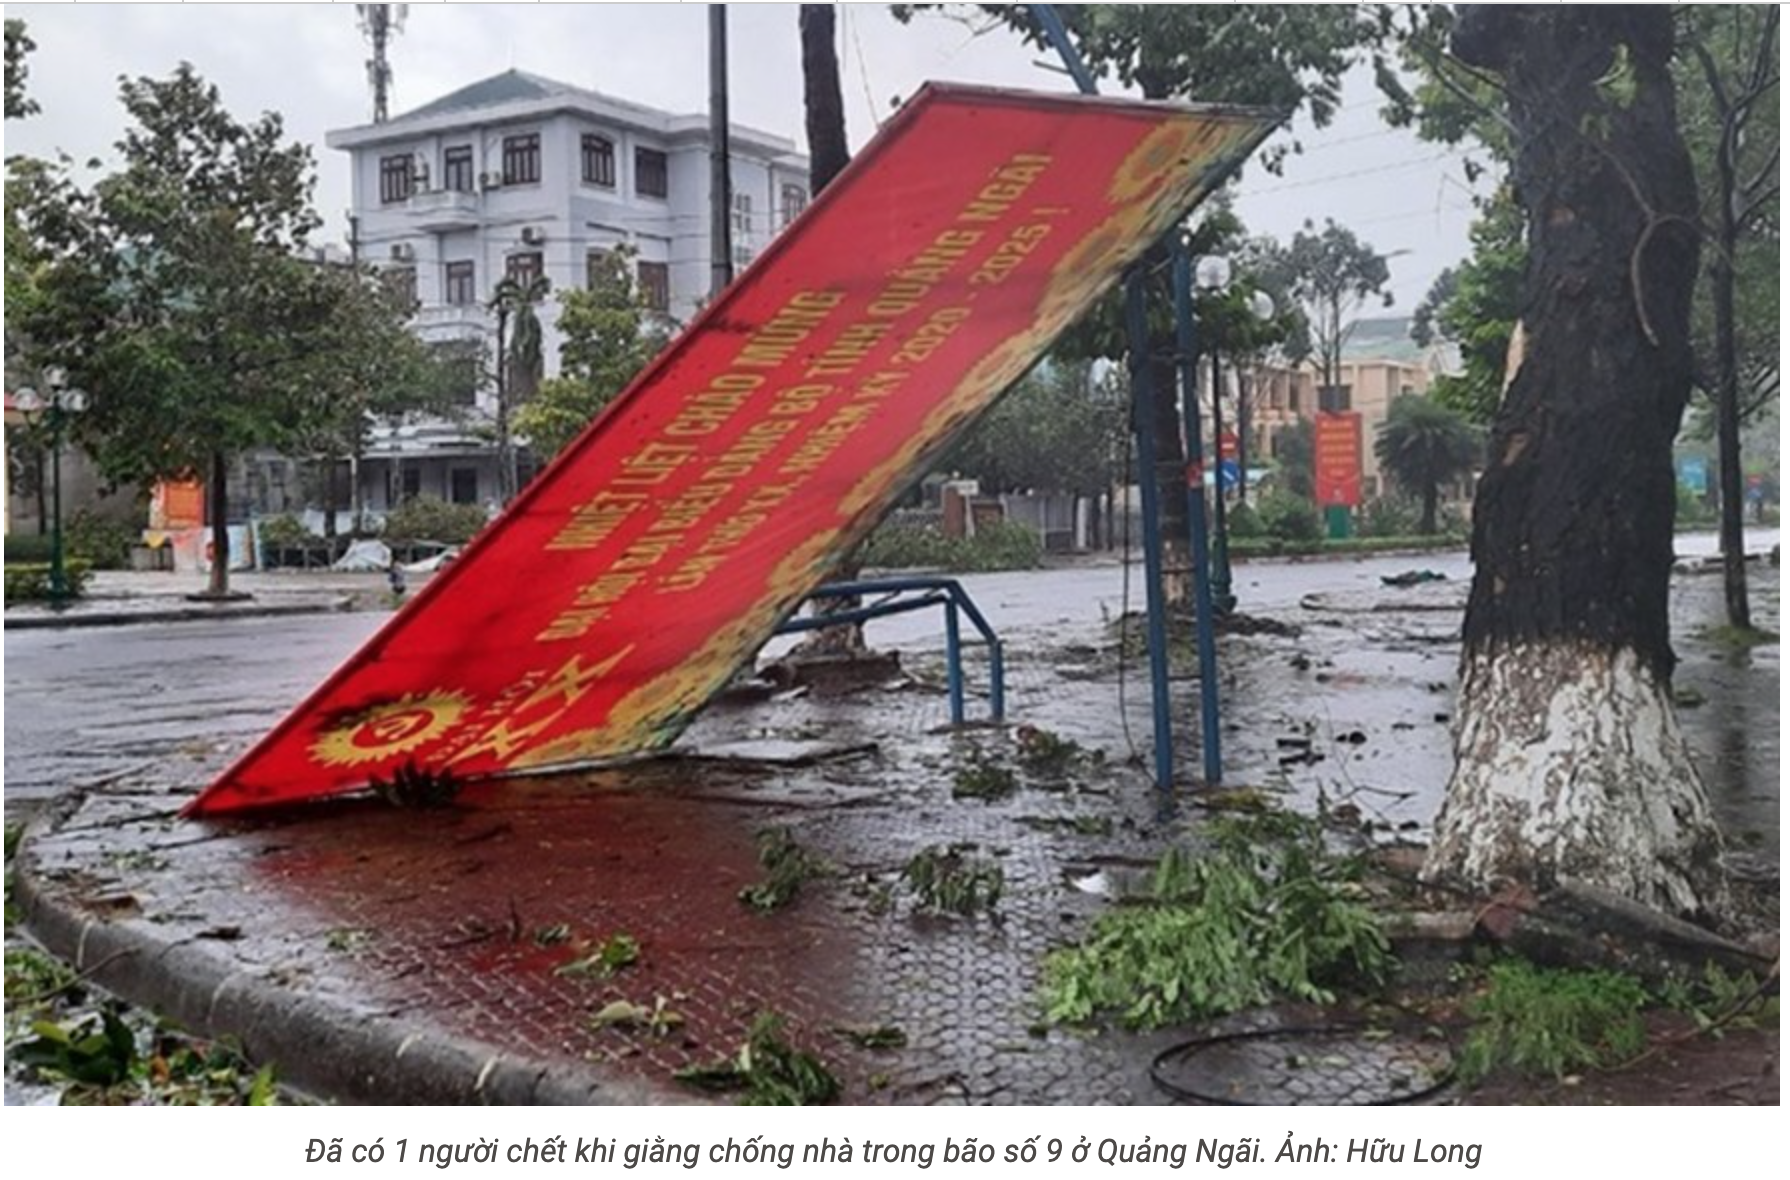 Bên cạnh đưa xe bọc thép cấp cứu kịp thời 1 người, thì ở Quảng Ngãi cũng đã có 1 người chết khi giằng chống nhà trong bão số 9.